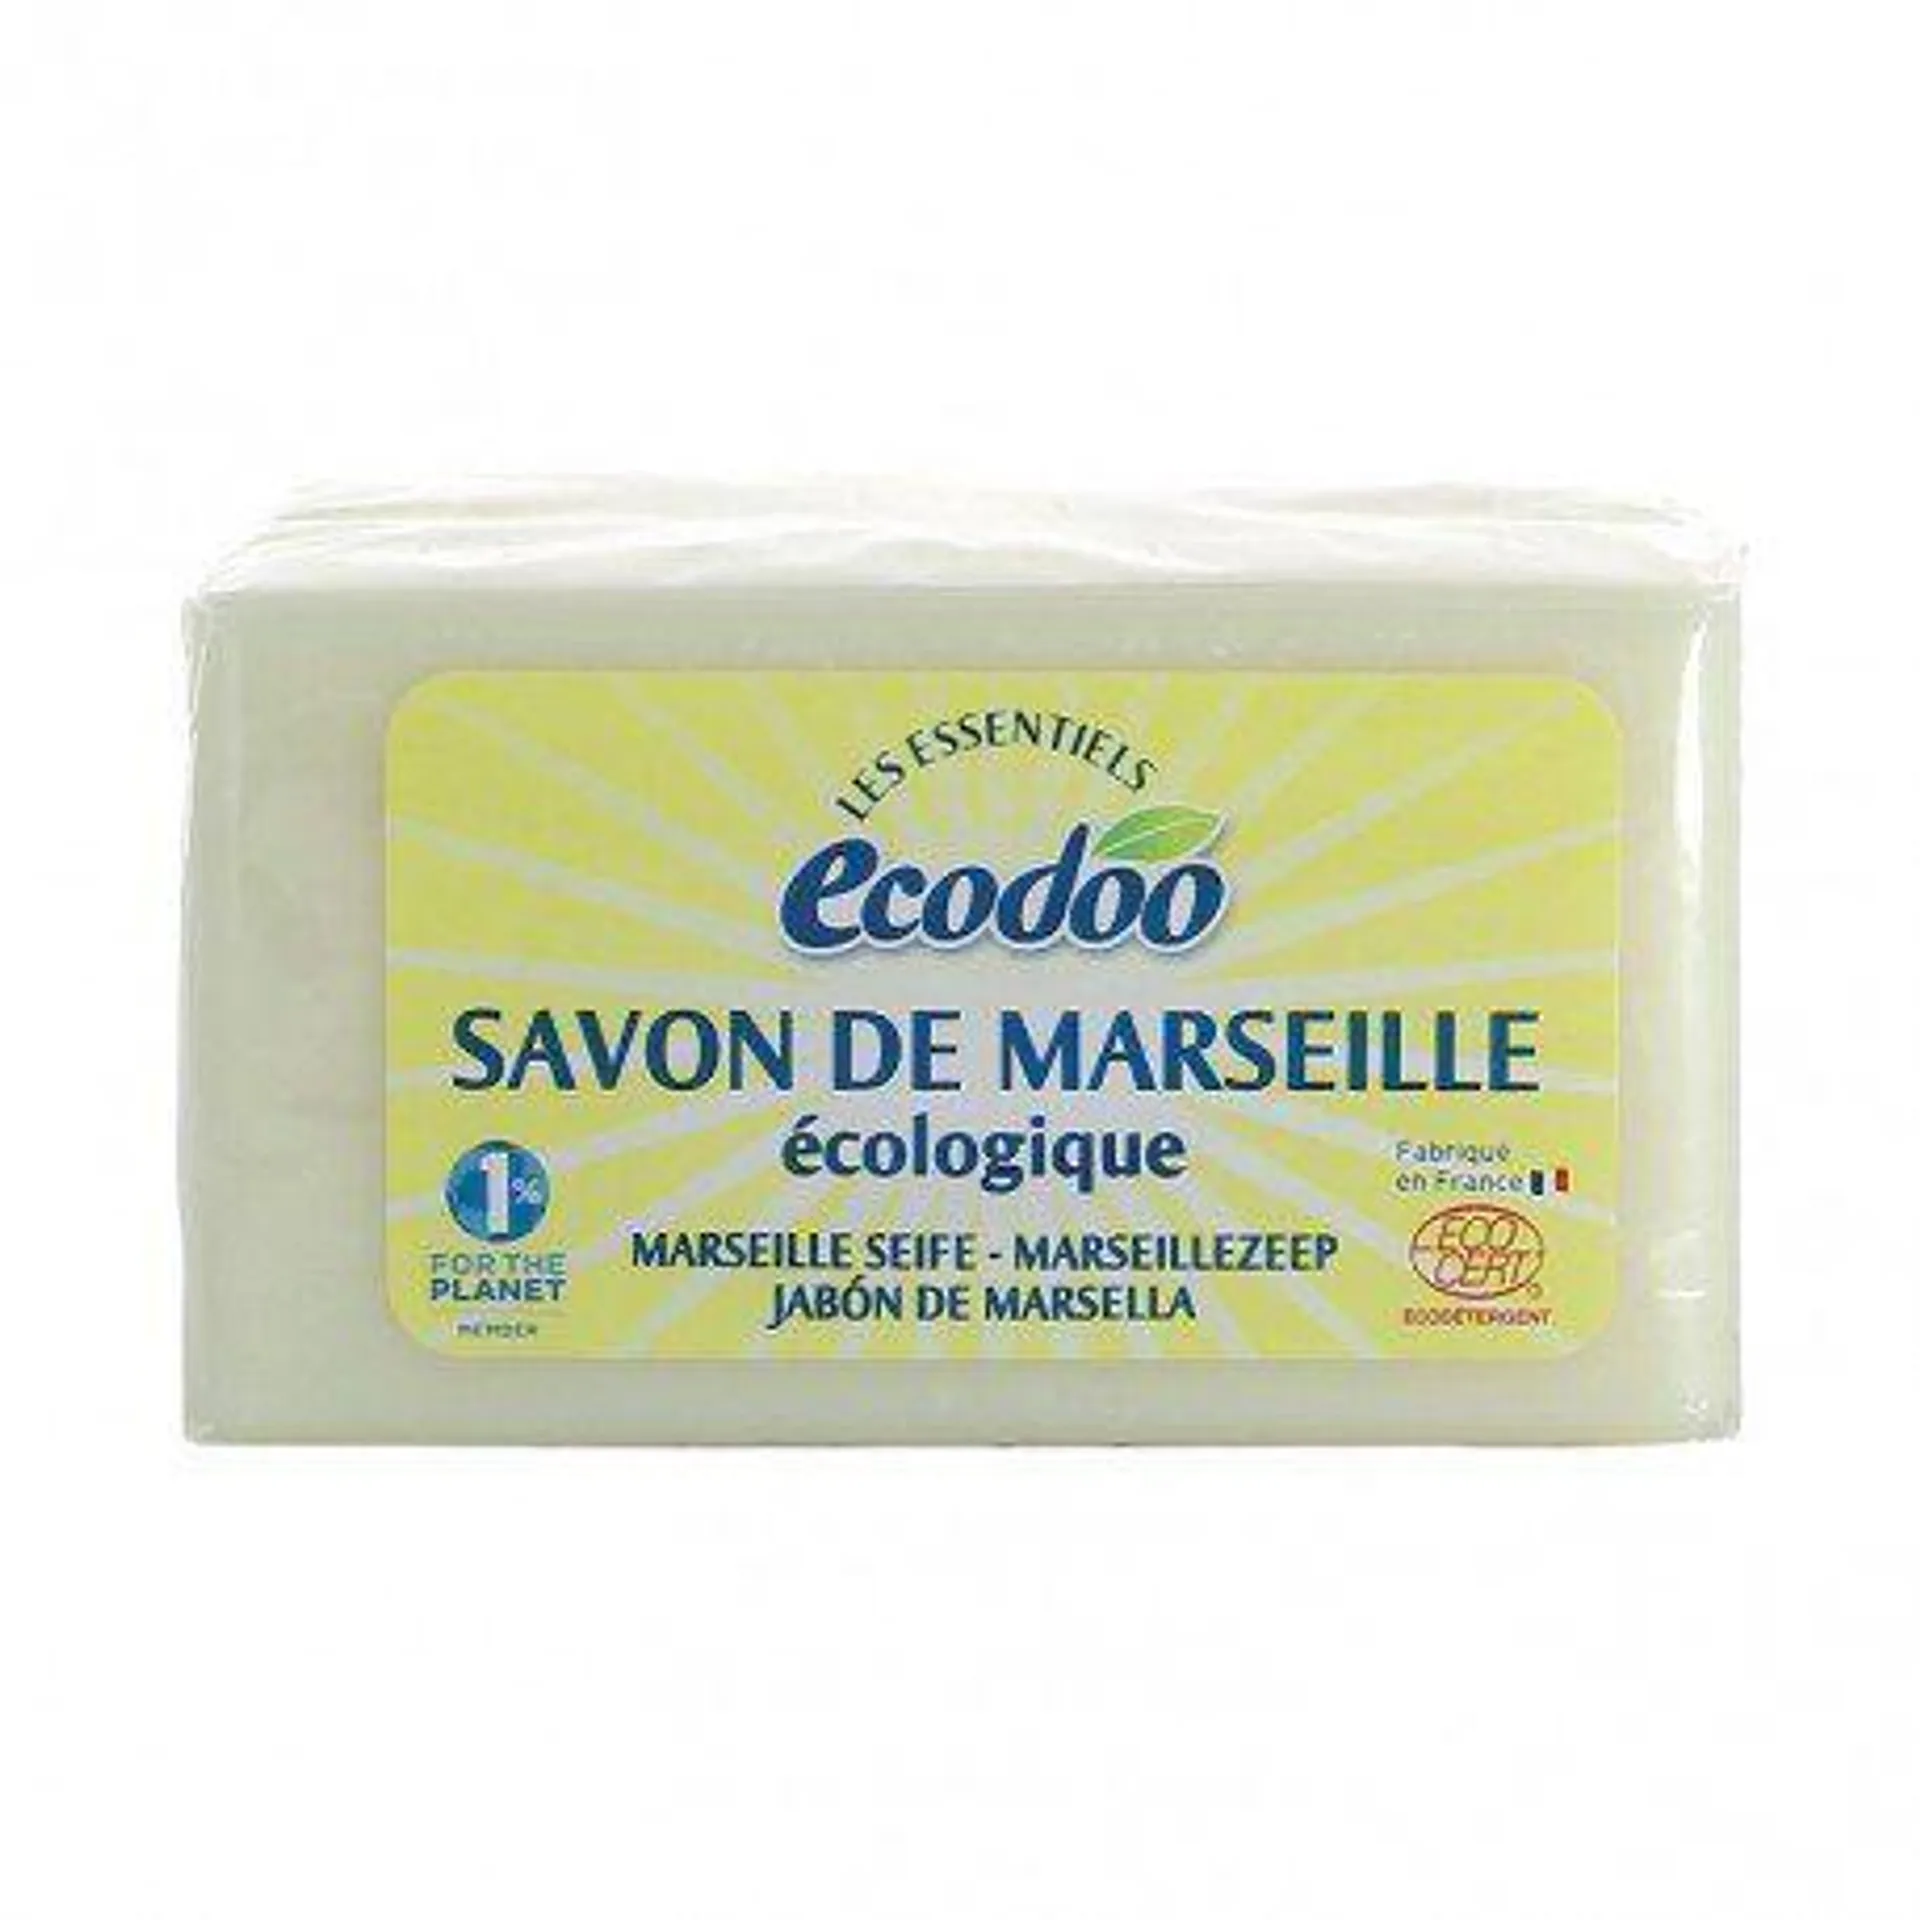 Jabón de marsella (400g) – Ecodoo